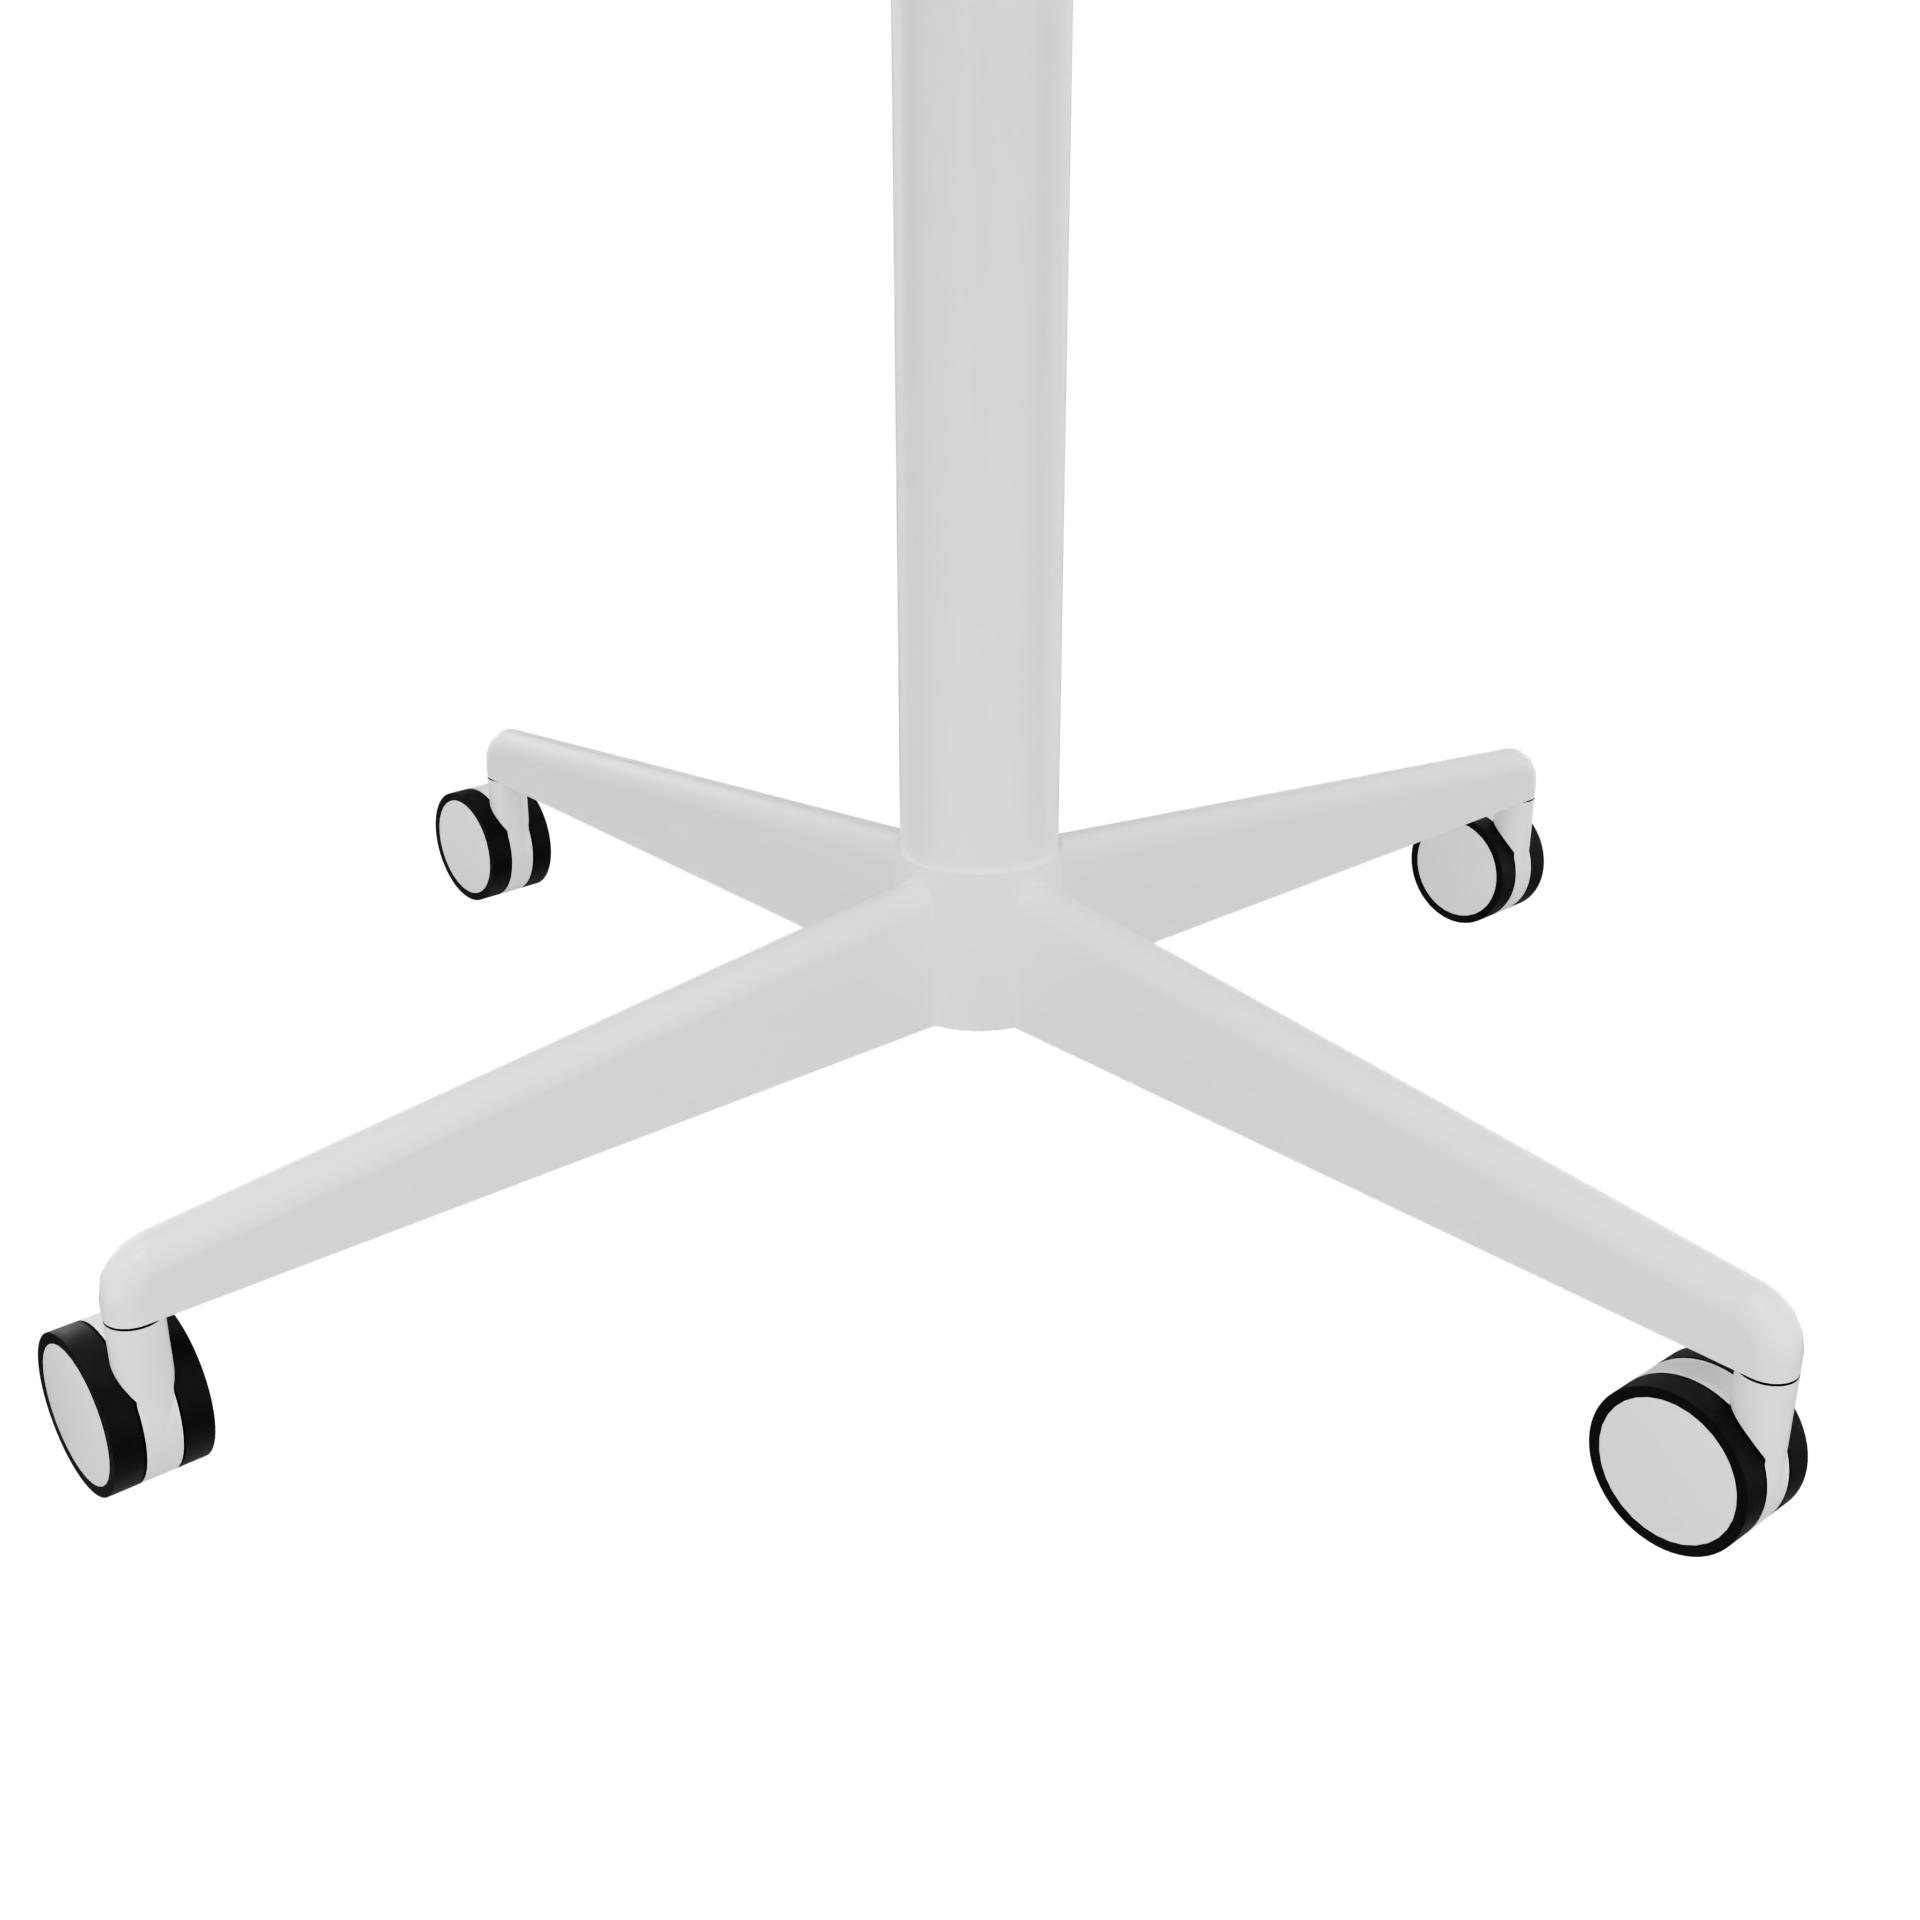 Sitz-Steh-Tisch Lift Talk quadratisch